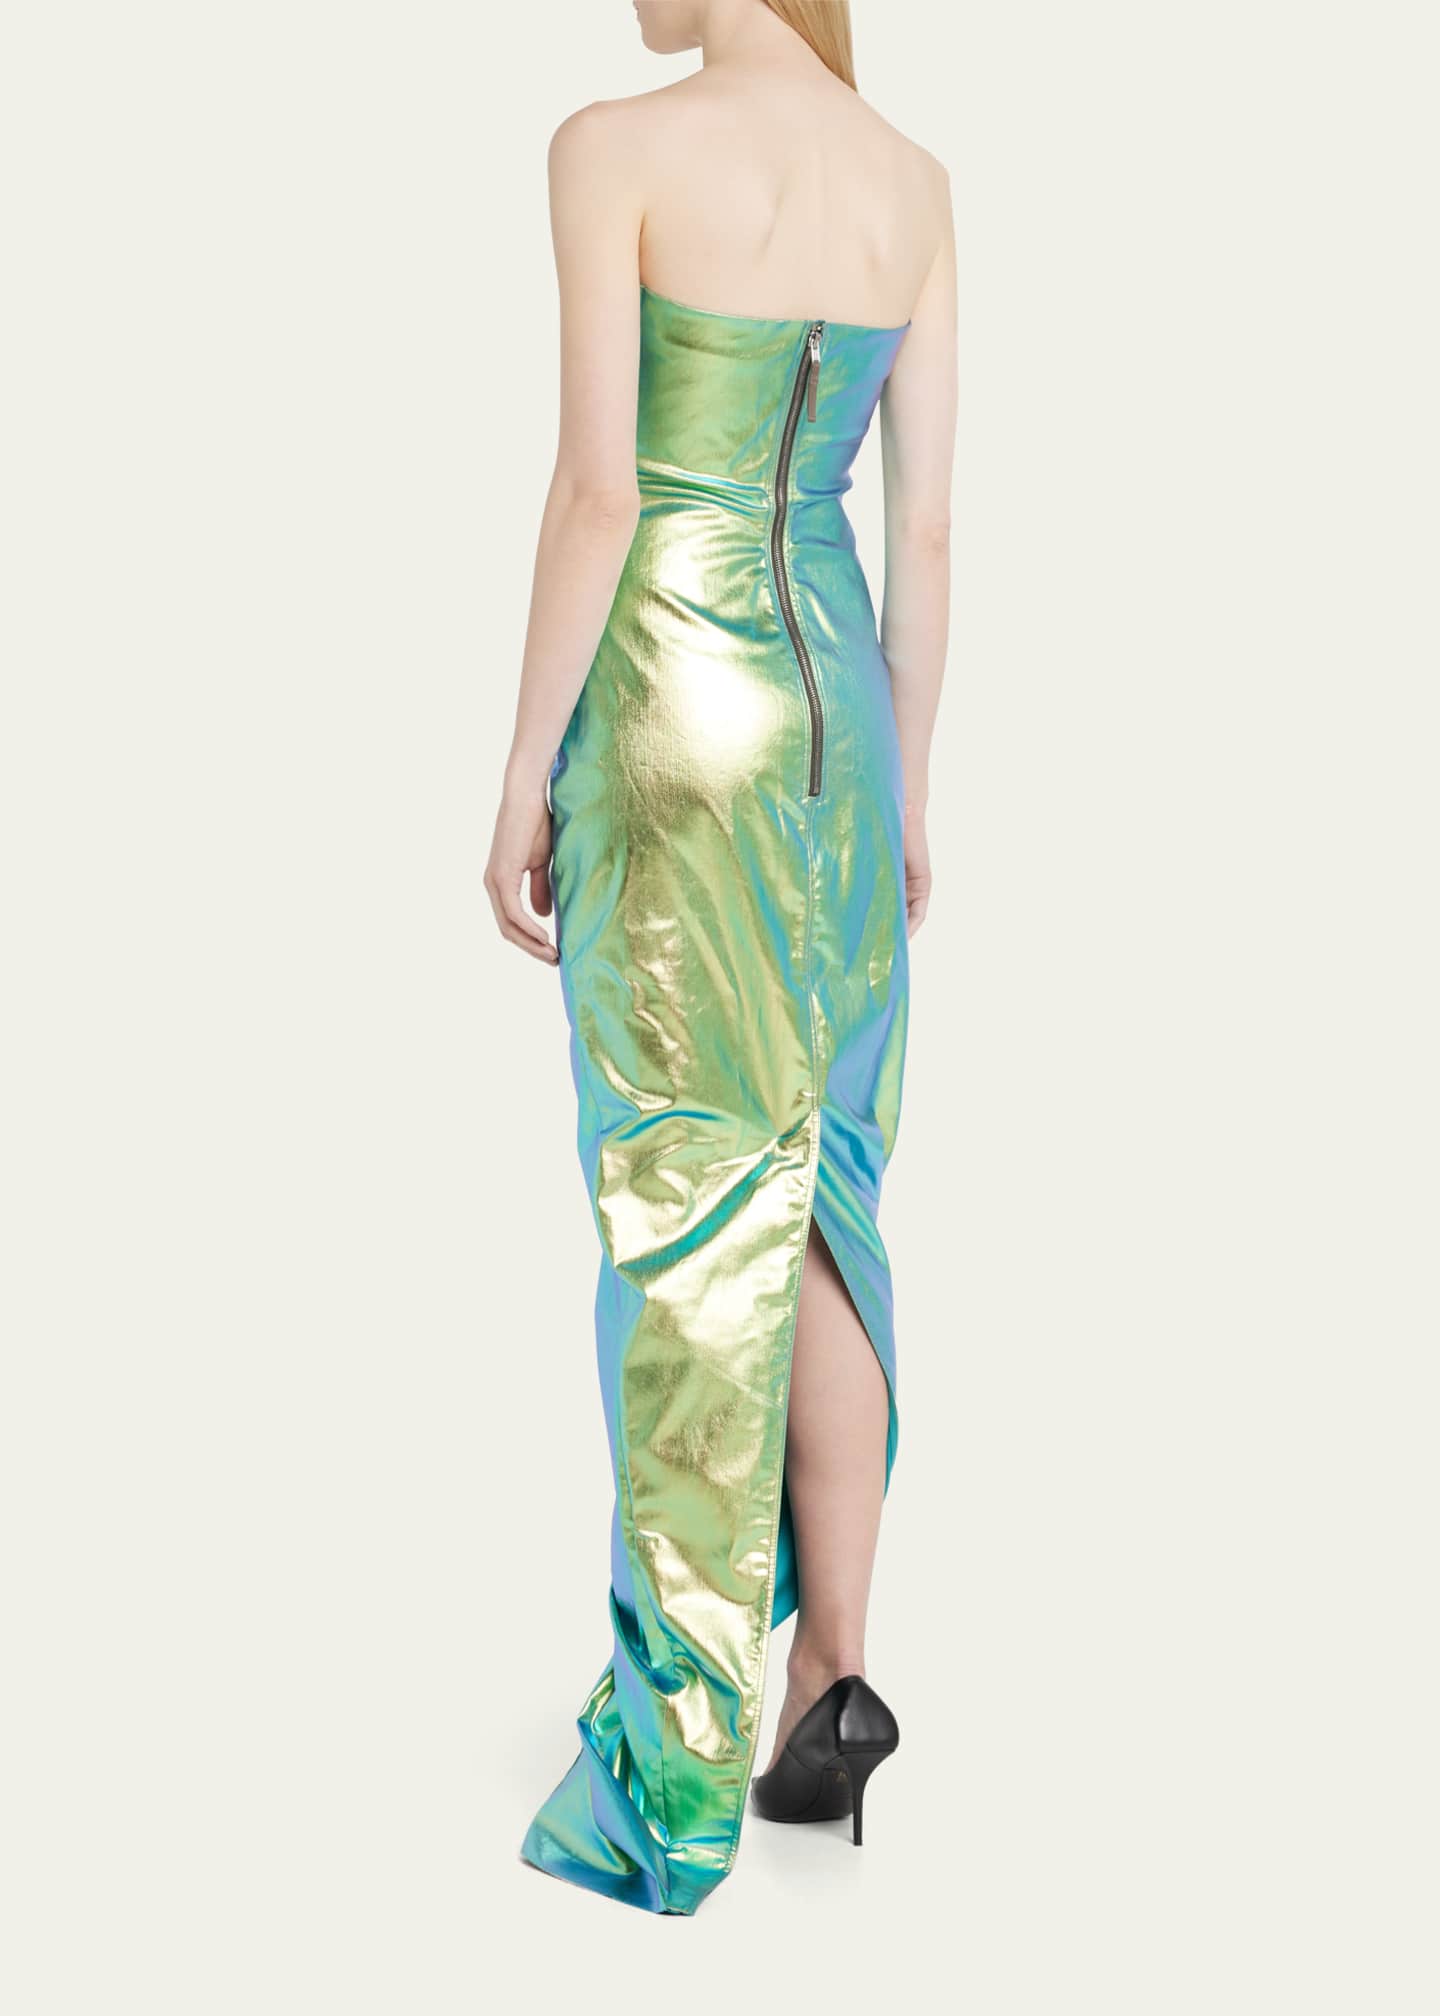 Rick Owens Iridescent Strapless Prong Cutout Gown - Bergdorf Goodman